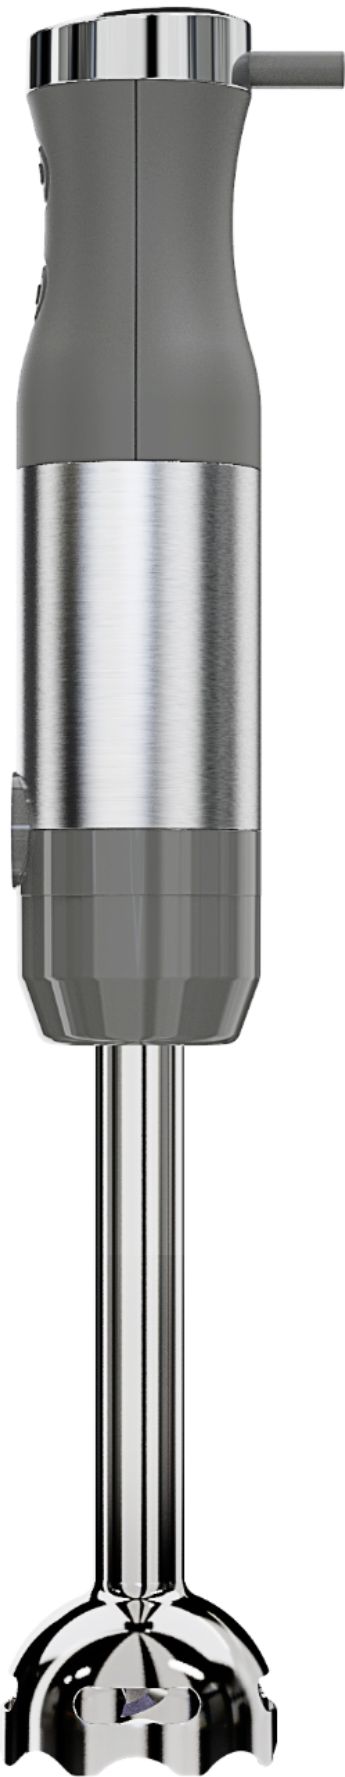 Juicers & Blenders, Gourmia GBJ190 Handheld Immersion Blender